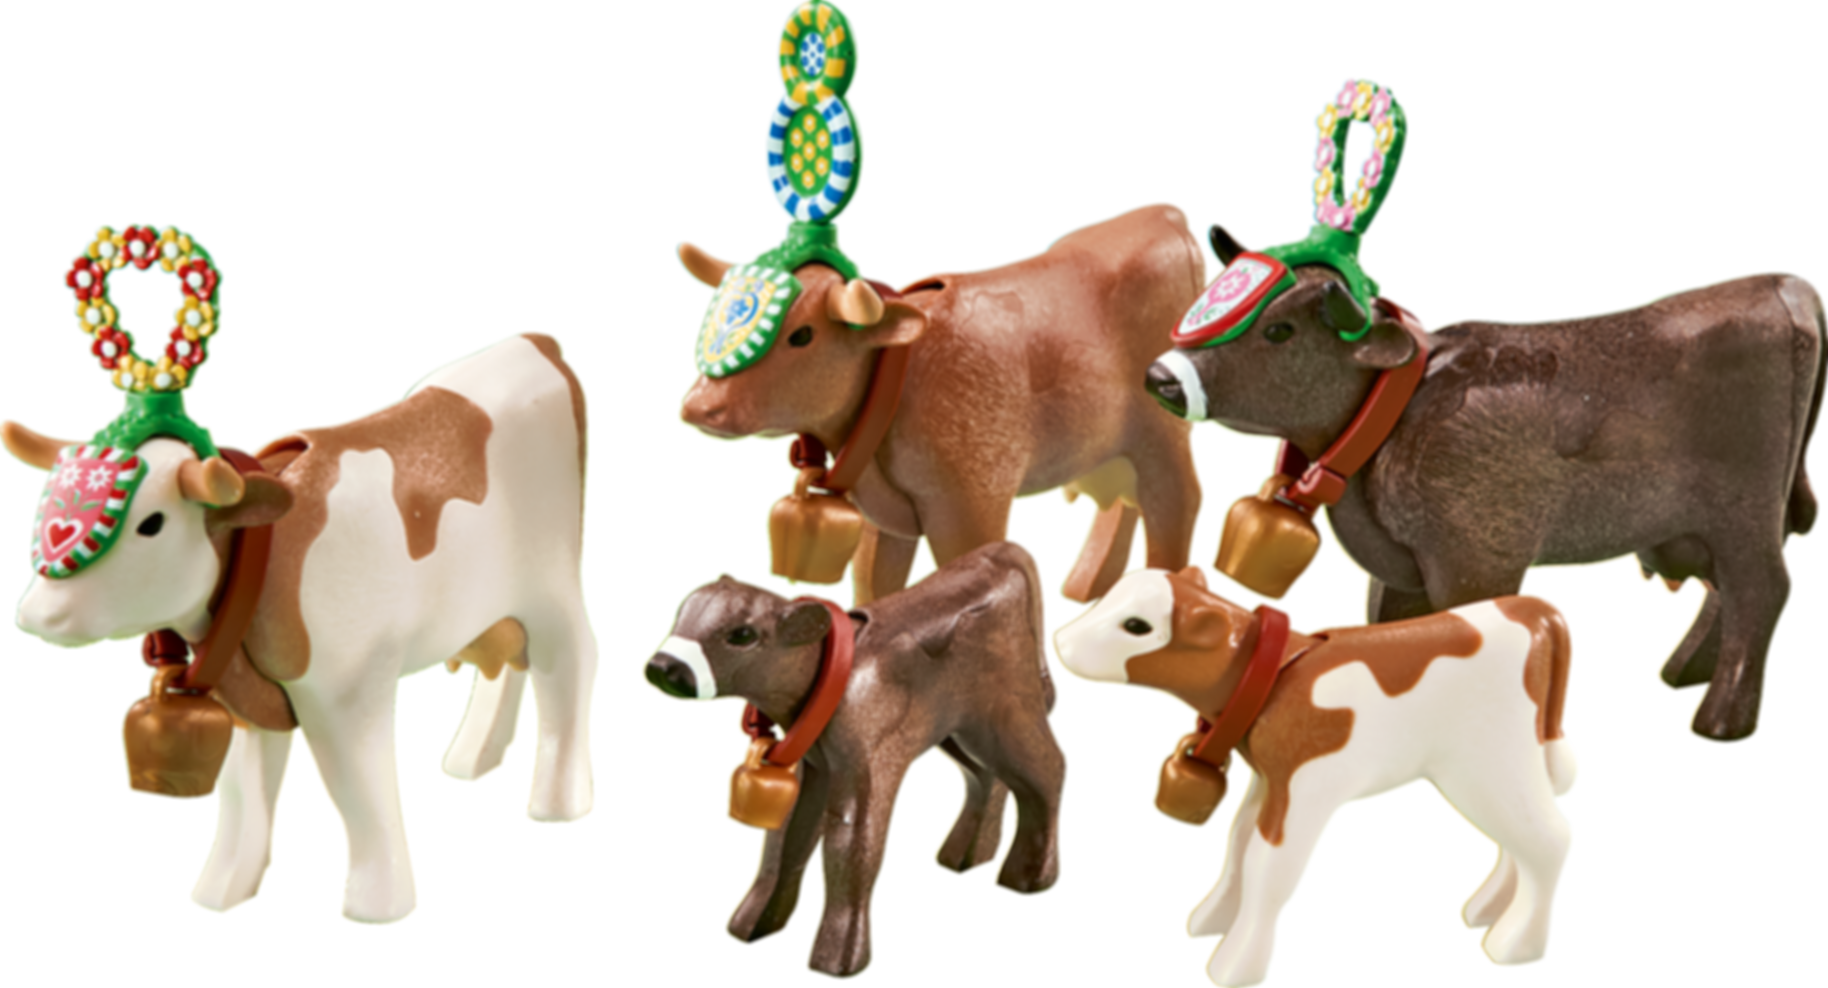 Traditioneel versierde koeien